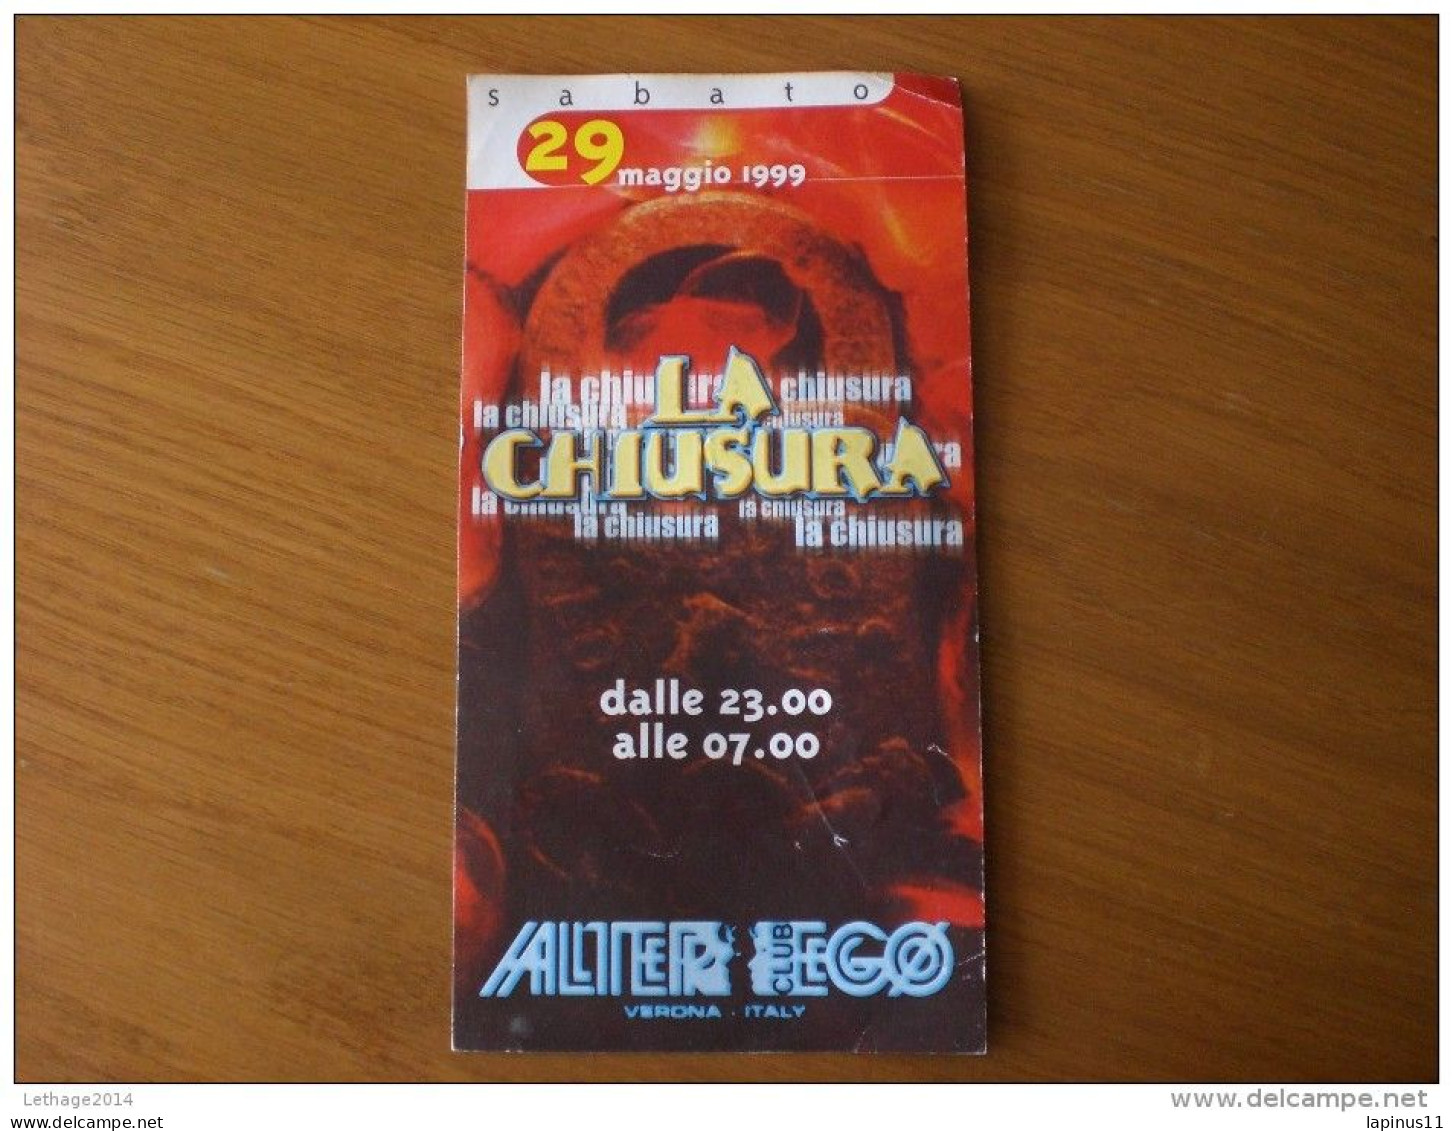 BIGLIETTO D INGRESSO DISCOTECA ALTEREGO 1999 - Tickets - Vouchers